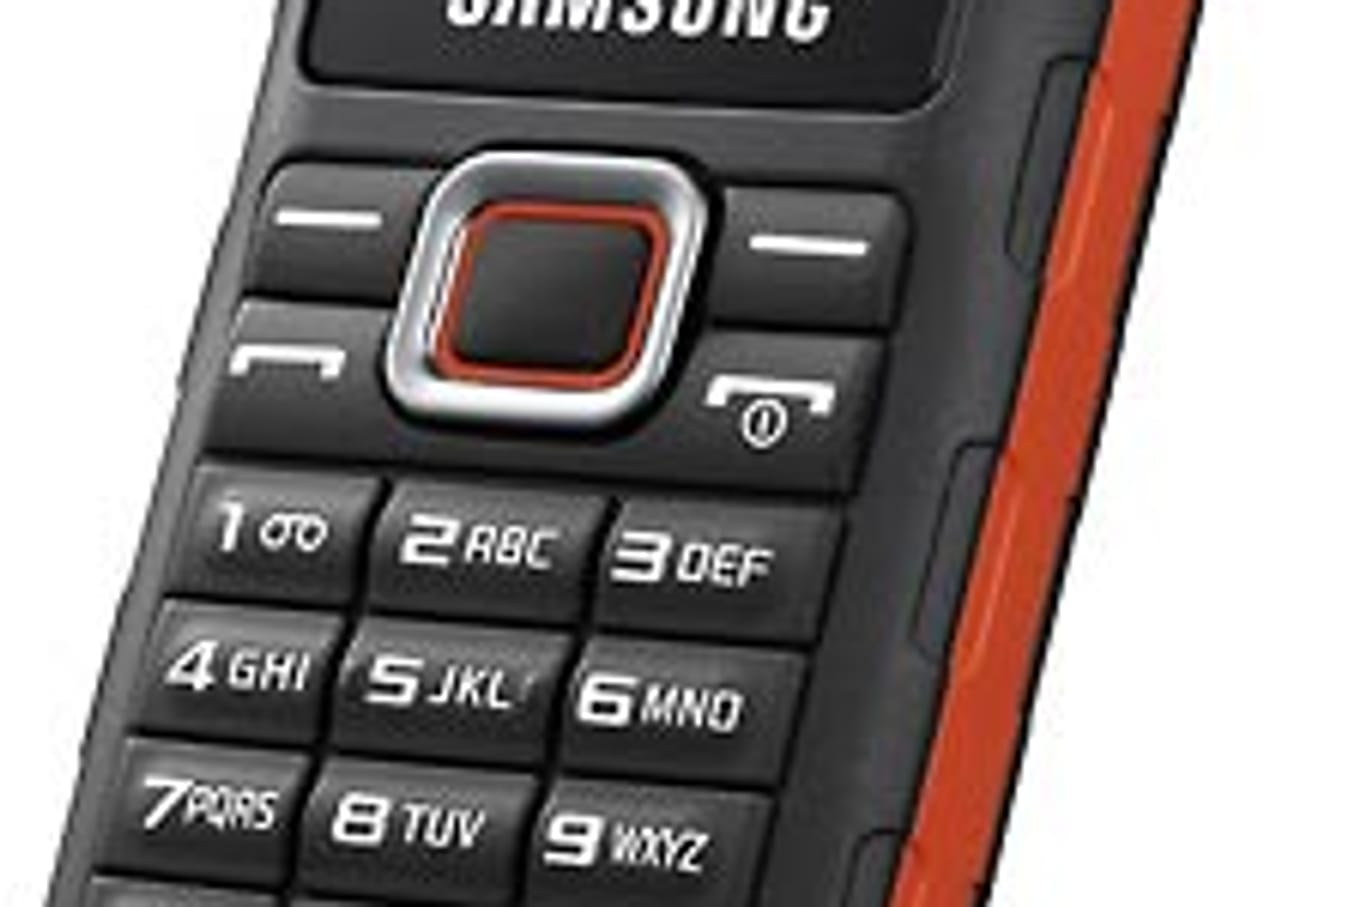 Das Samsung E 1130B ist das neueste unserer Favoriten und wurde im ersten Quartal 2010 vorgestellt. Das Gehäuse ist besonders Stoß-, Kratz-, Temperatur- und Spritzwasserresistent. Zudem verfügt das Gerät über eine Taschenlampe. Wenn man die nicht anschaltet und das Handy auch sonst nicht benutzt, sollte der Akku theoretisch bis zu 28 Tage ohne Aufladen überstehen.